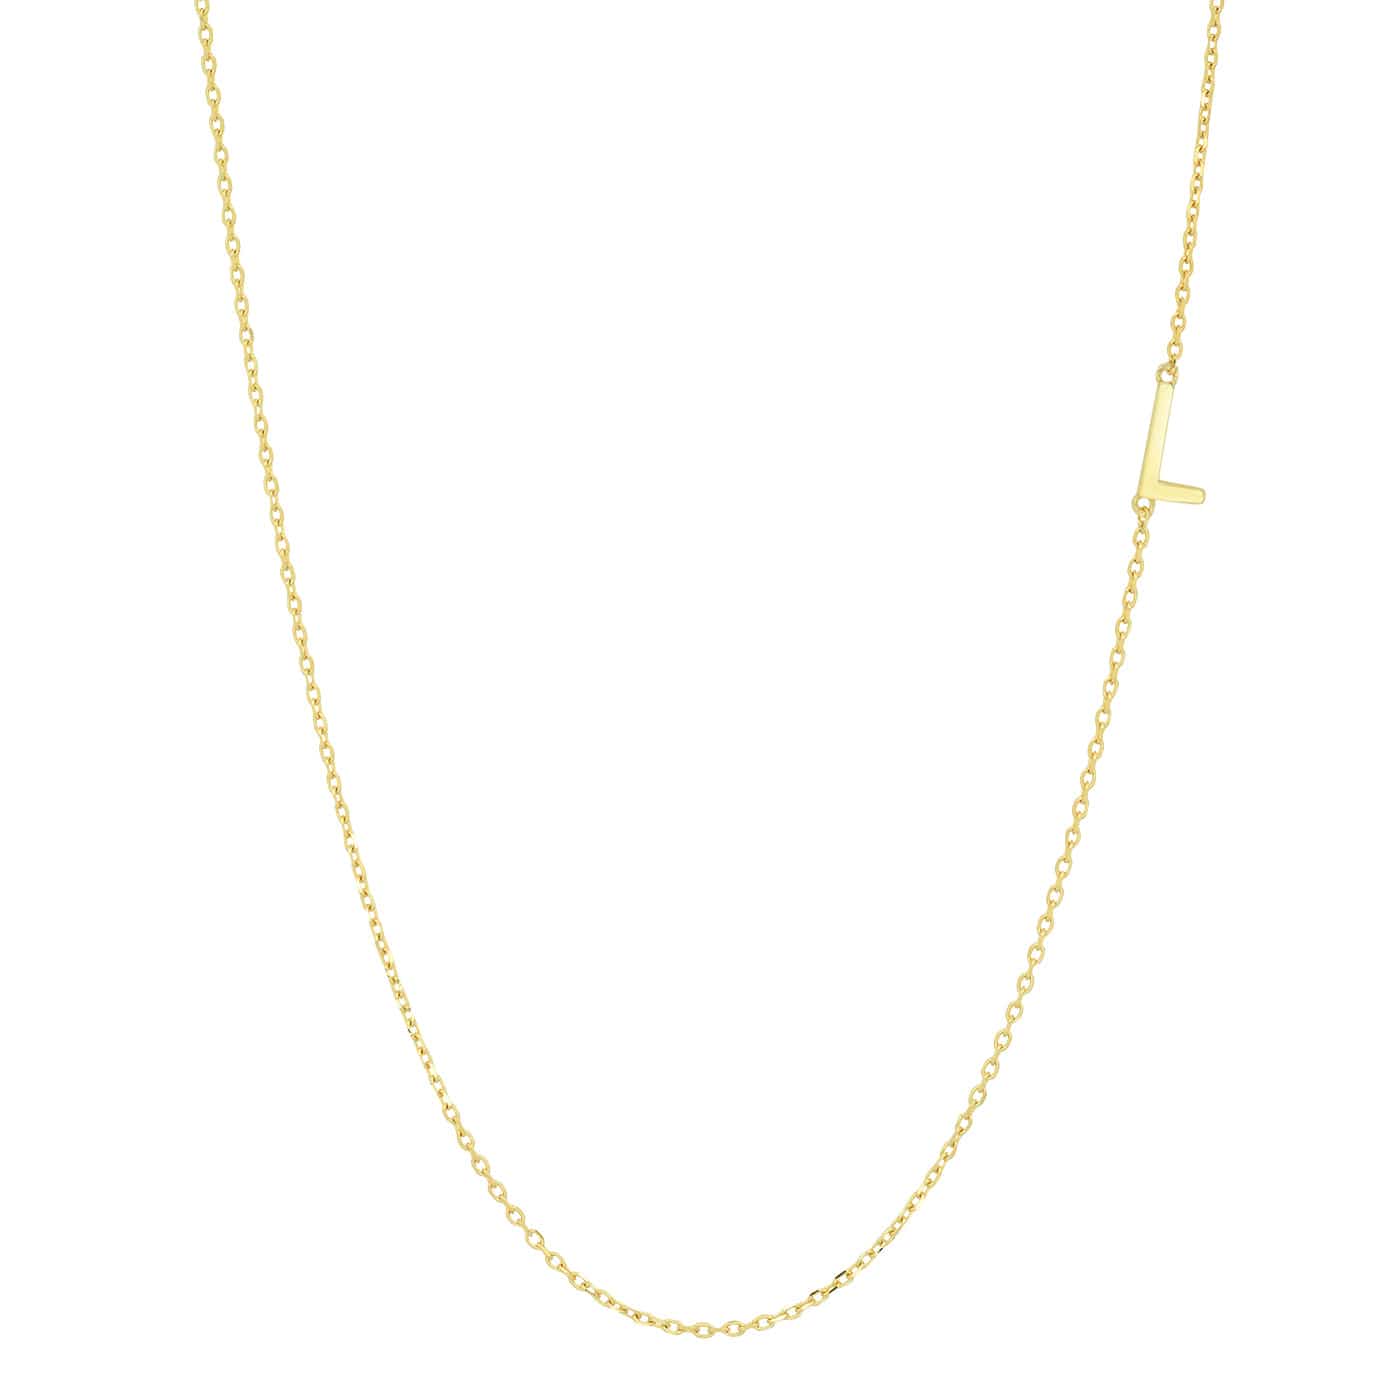 TAI JEWELRY Necklace L 14k Sideways Monogram Necklace